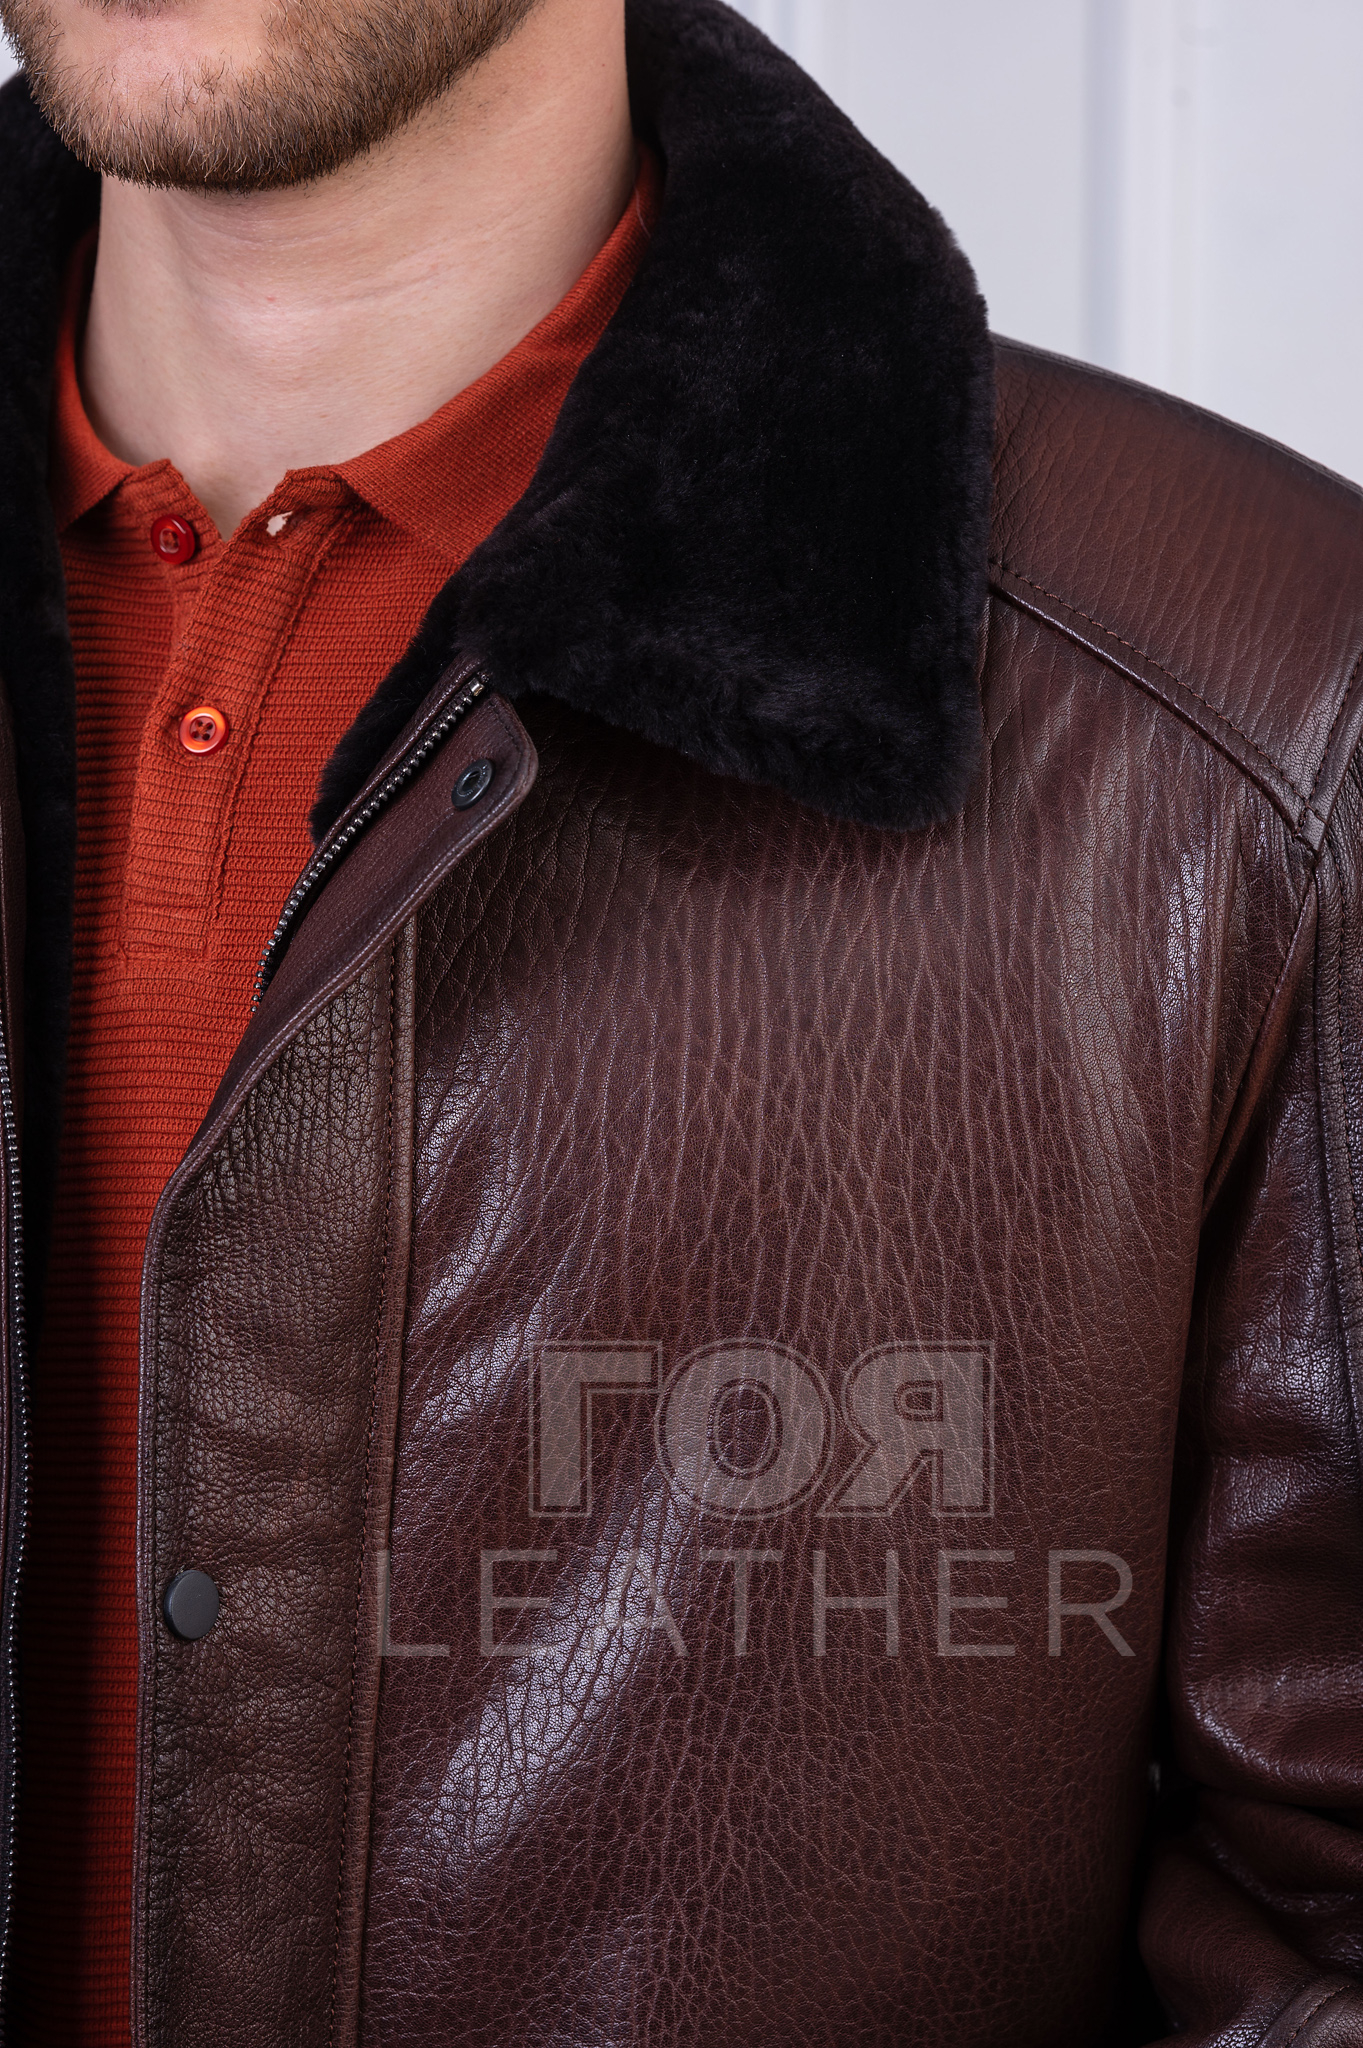 Мъжки стилен кожух от ГОЯ Leather. Нов модел кожух изработен от релефна агнешка лицева кожа и тула. Комбинирано закопчаване цип и каси. Моделът е с дължина покриваща класическо сако. 100% естествена кожа.